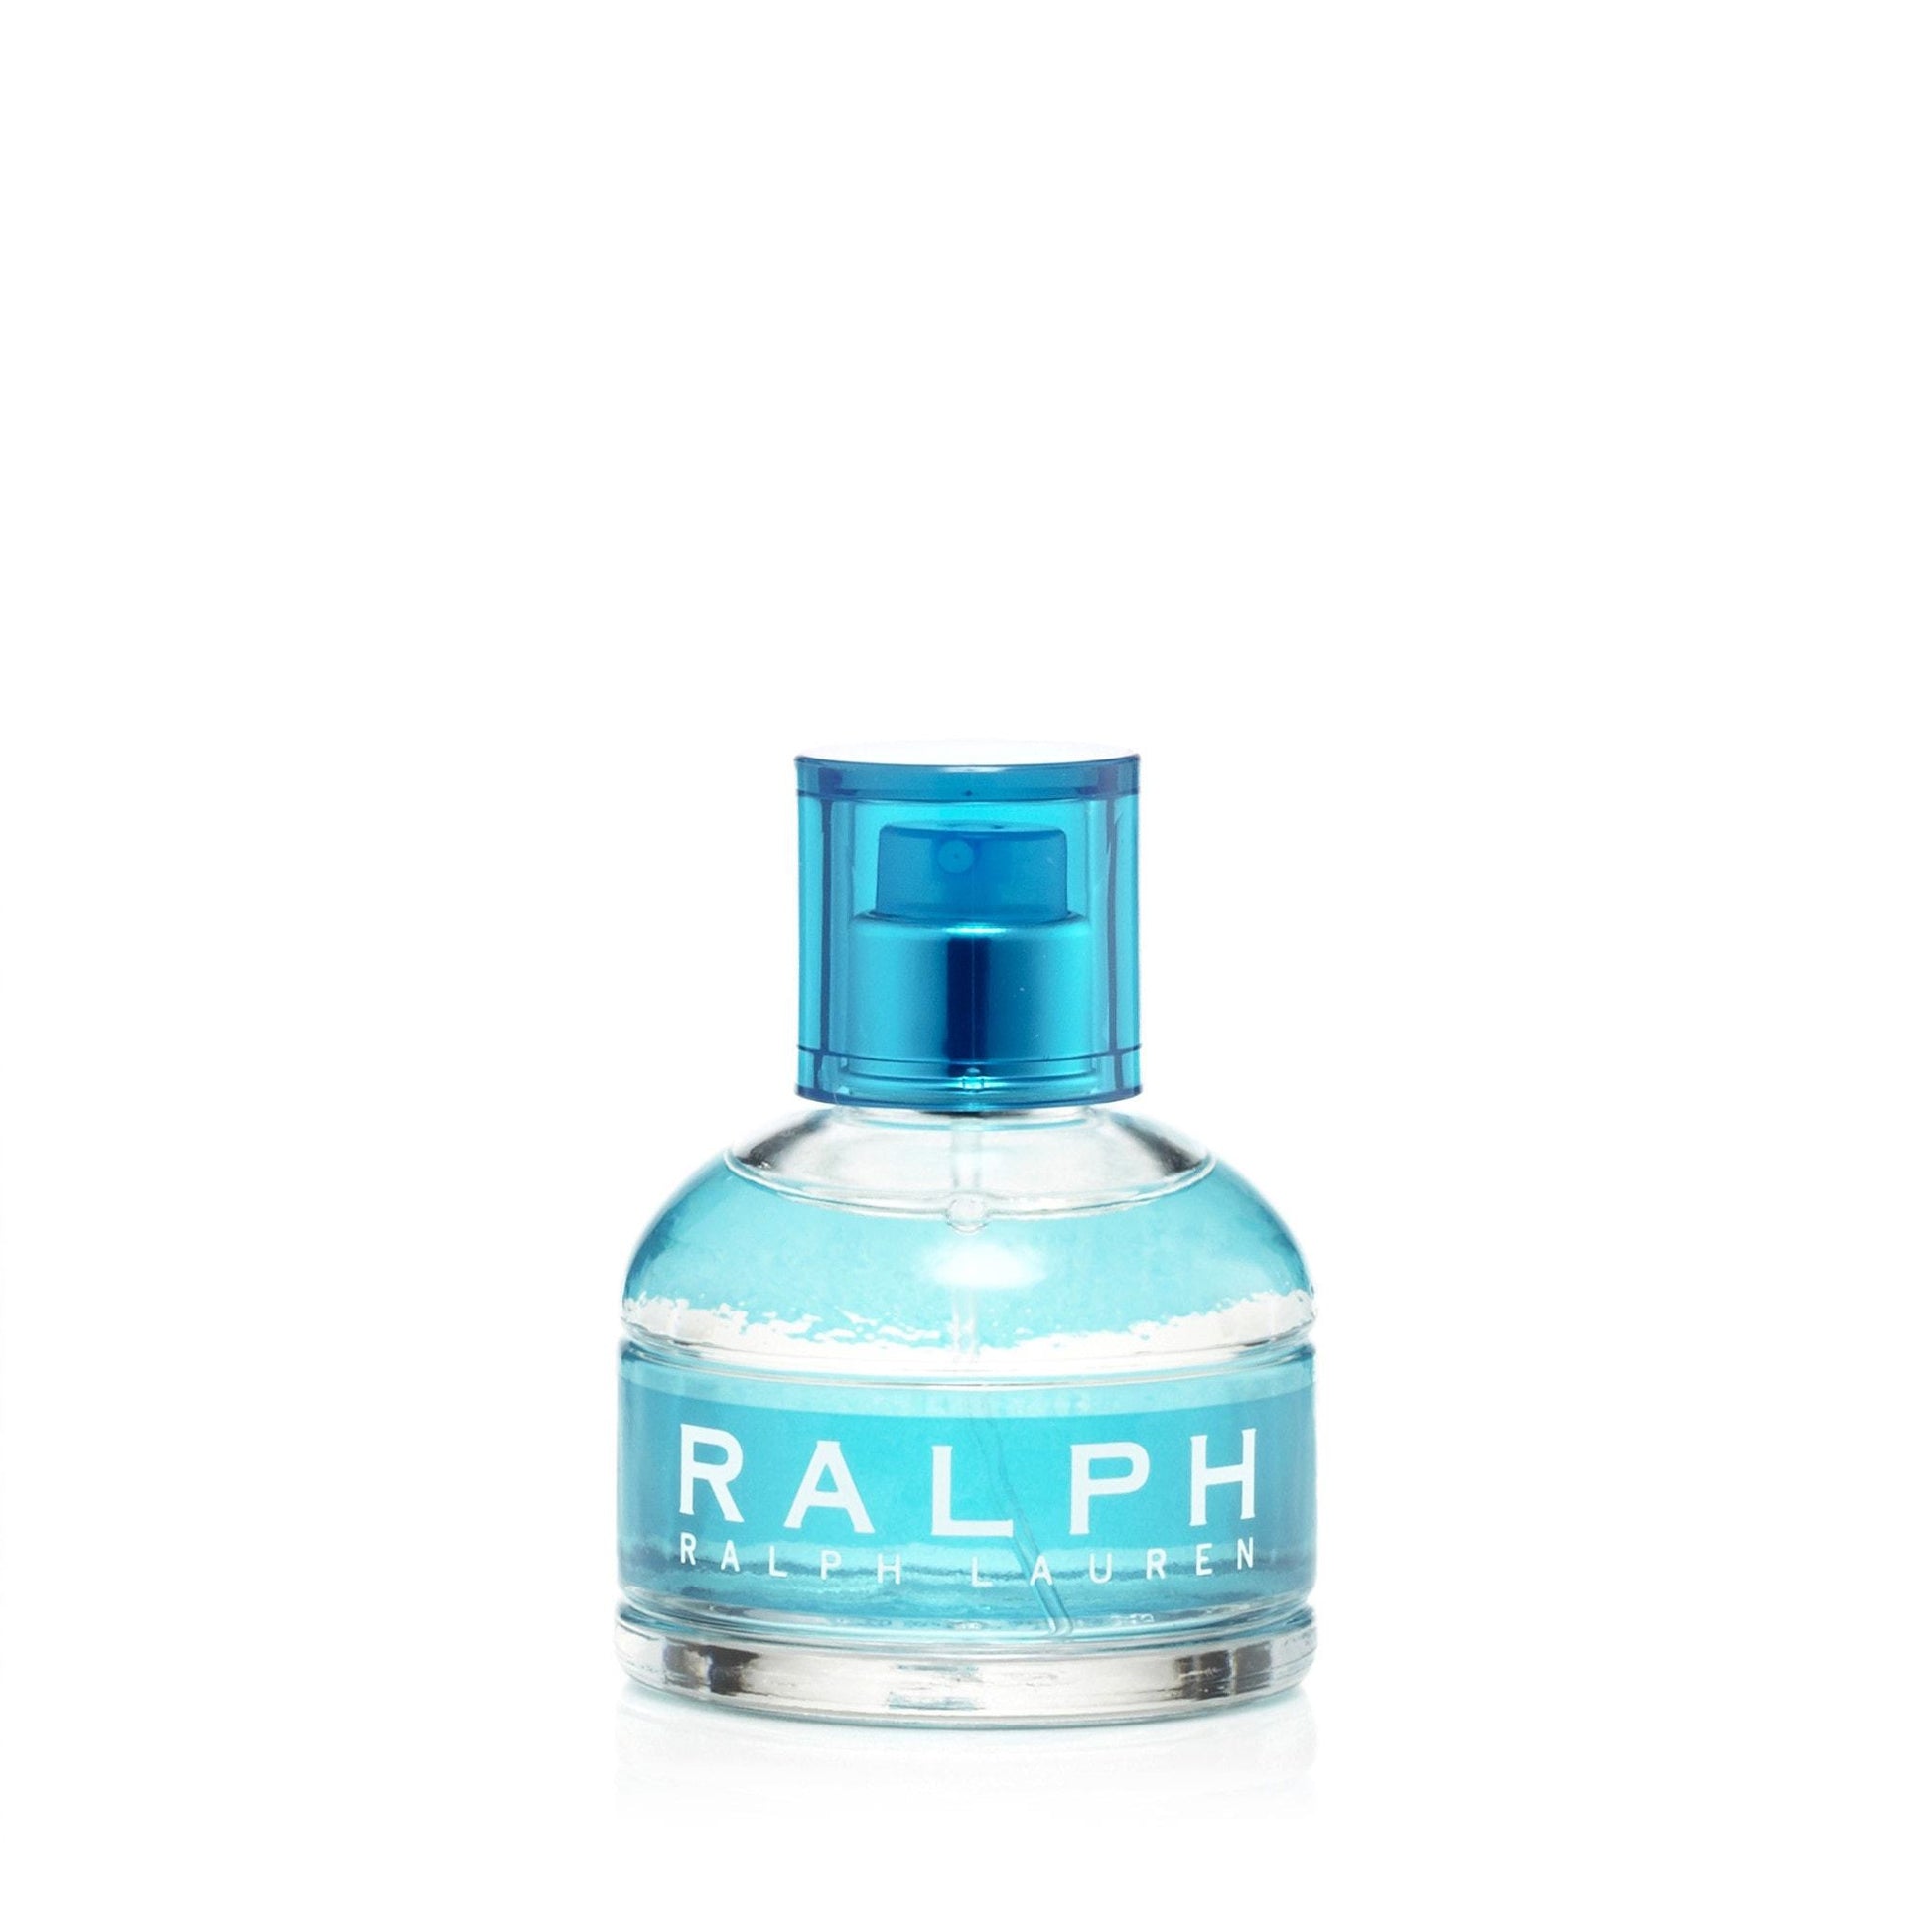 Ralph Eau de Toilette Spray for Women by Ralph Lauren, Product image 4